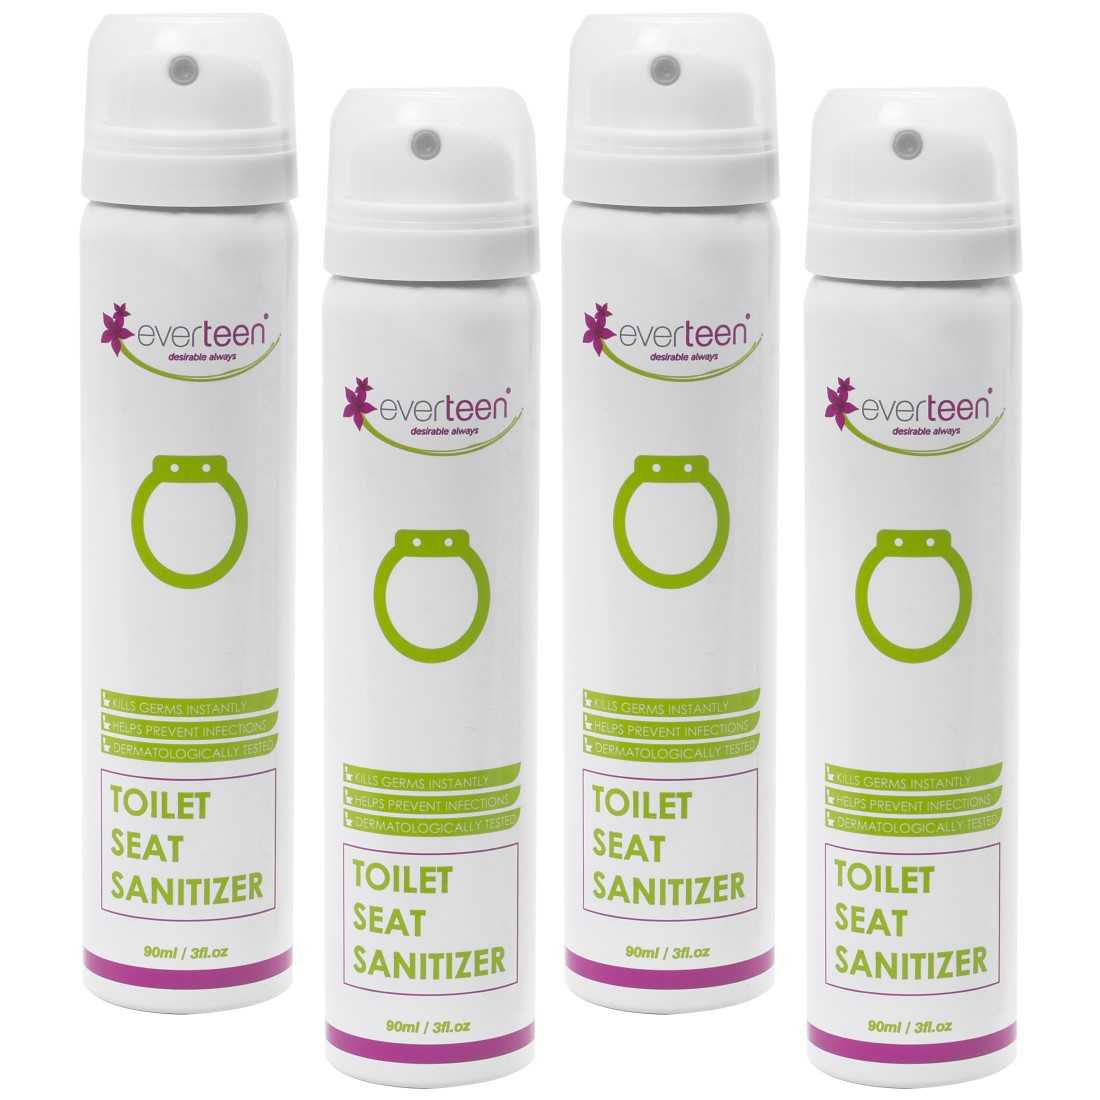     			everteen Instant Toilet Seat Sanitizer Spray for Feminine Hygiene in Women - 4 Packs (90ml Each)